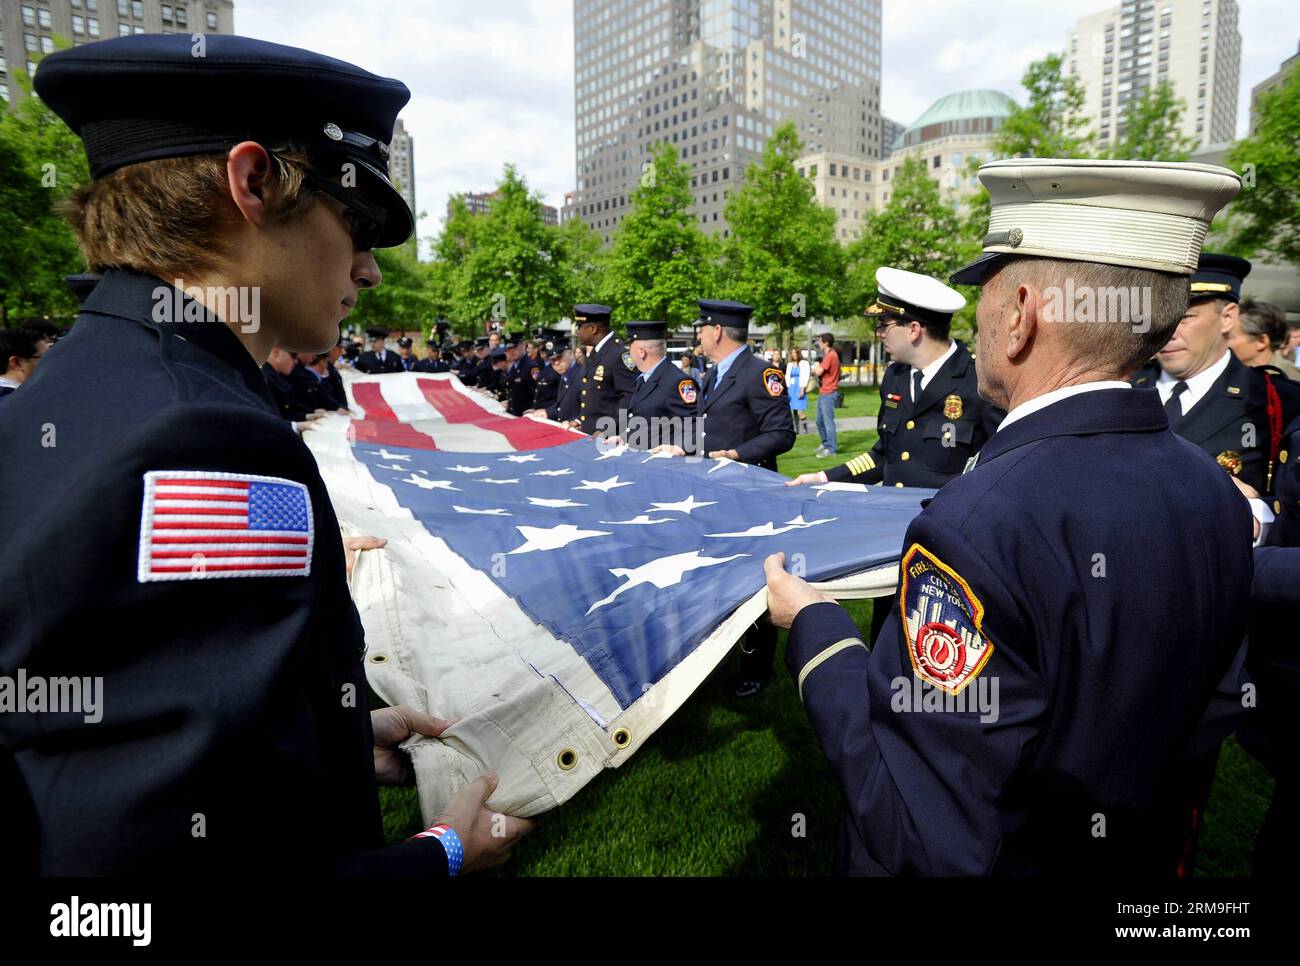 (140521) -- NEW YORK, 21 maggio 2014 (Xinhua) -- i vigili del fuoco, la polizia e i membri dell'esercito tengono la National 9/11 Flag davanti al National September 11 Memorial Museum di New York, Stati Uniti, 21 maggio 2014. Il museo commemorativo di mercoledì è stato aperto al pubblico dopo un trasferimento cerimoniale della National 9/11 Flag, una bandiera americana che aveva volato al 90 di West Street, adiacente a Ground Zero, per settimane dopo gli attacchi, nella collezione permanente del museo. (Xinhua/Wang lei) US-NEW YORK-SEPT. 11 MEMORIAL MUSEUM - APERTURA AL PUBBLICO PUBLICATIONxNOTxINxCHN New York 21 maggio Foto Stock